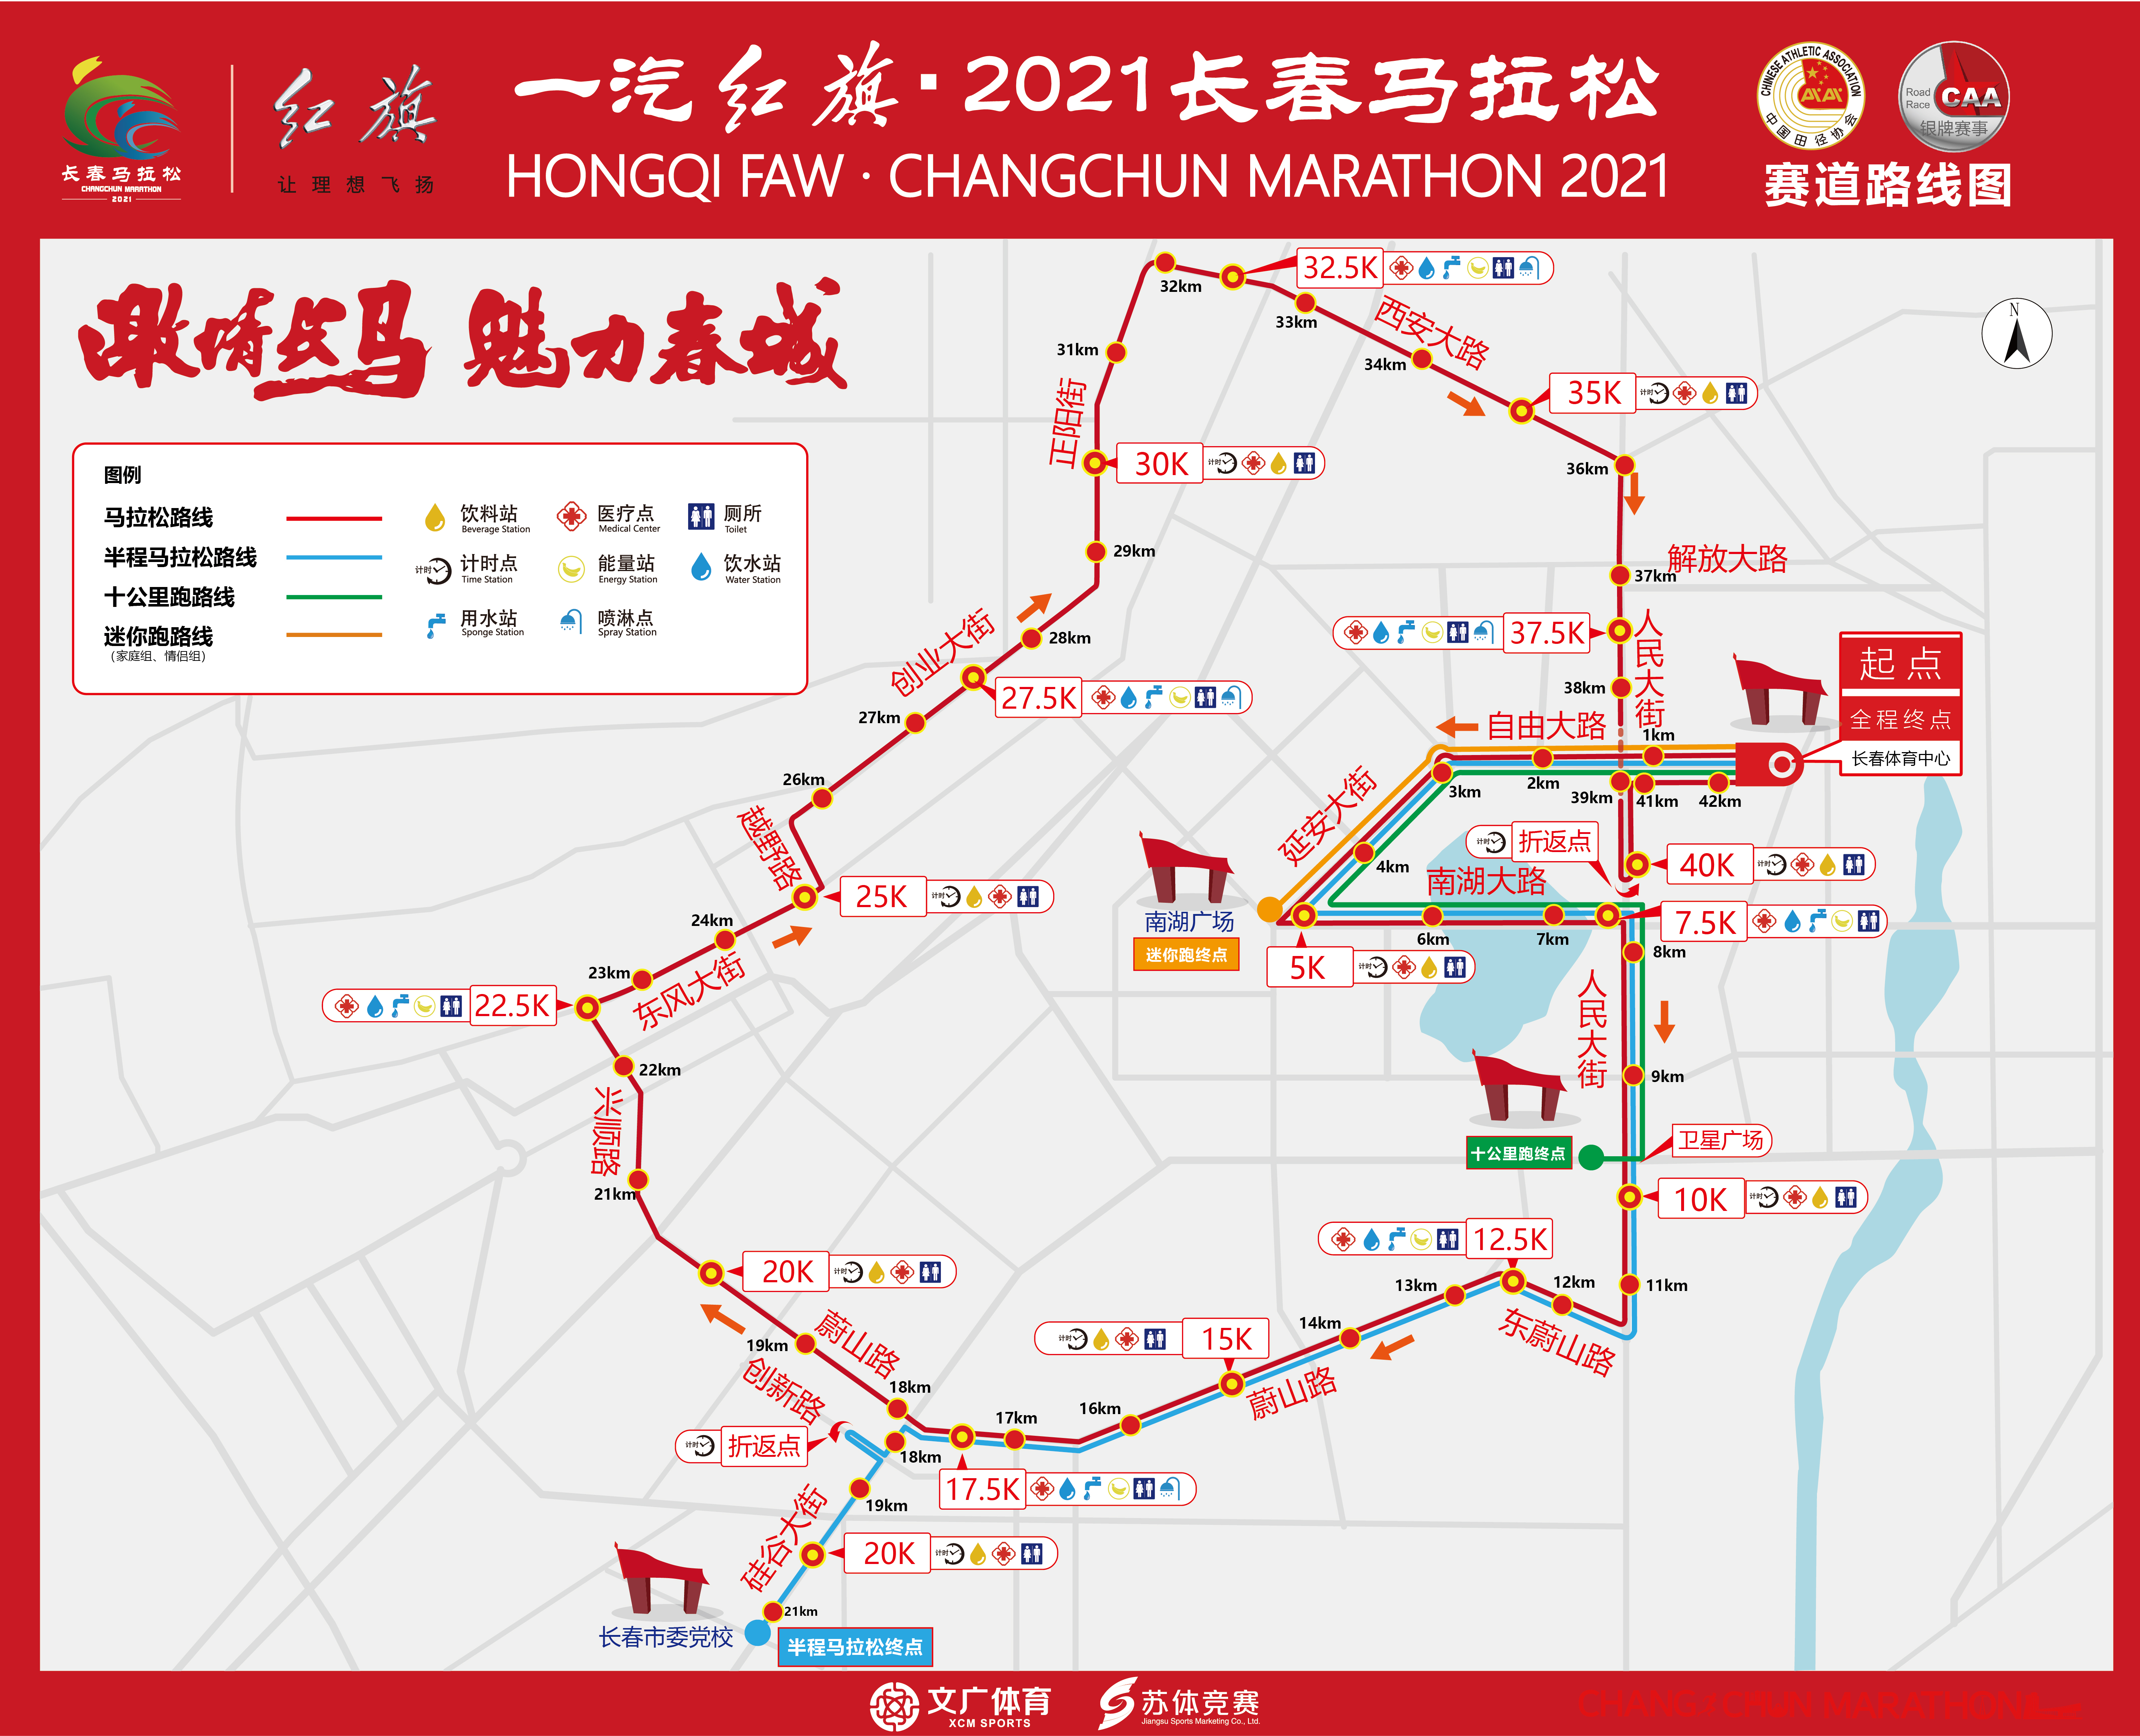 5月30日,一汽红旗·2021长春马拉松将开跑